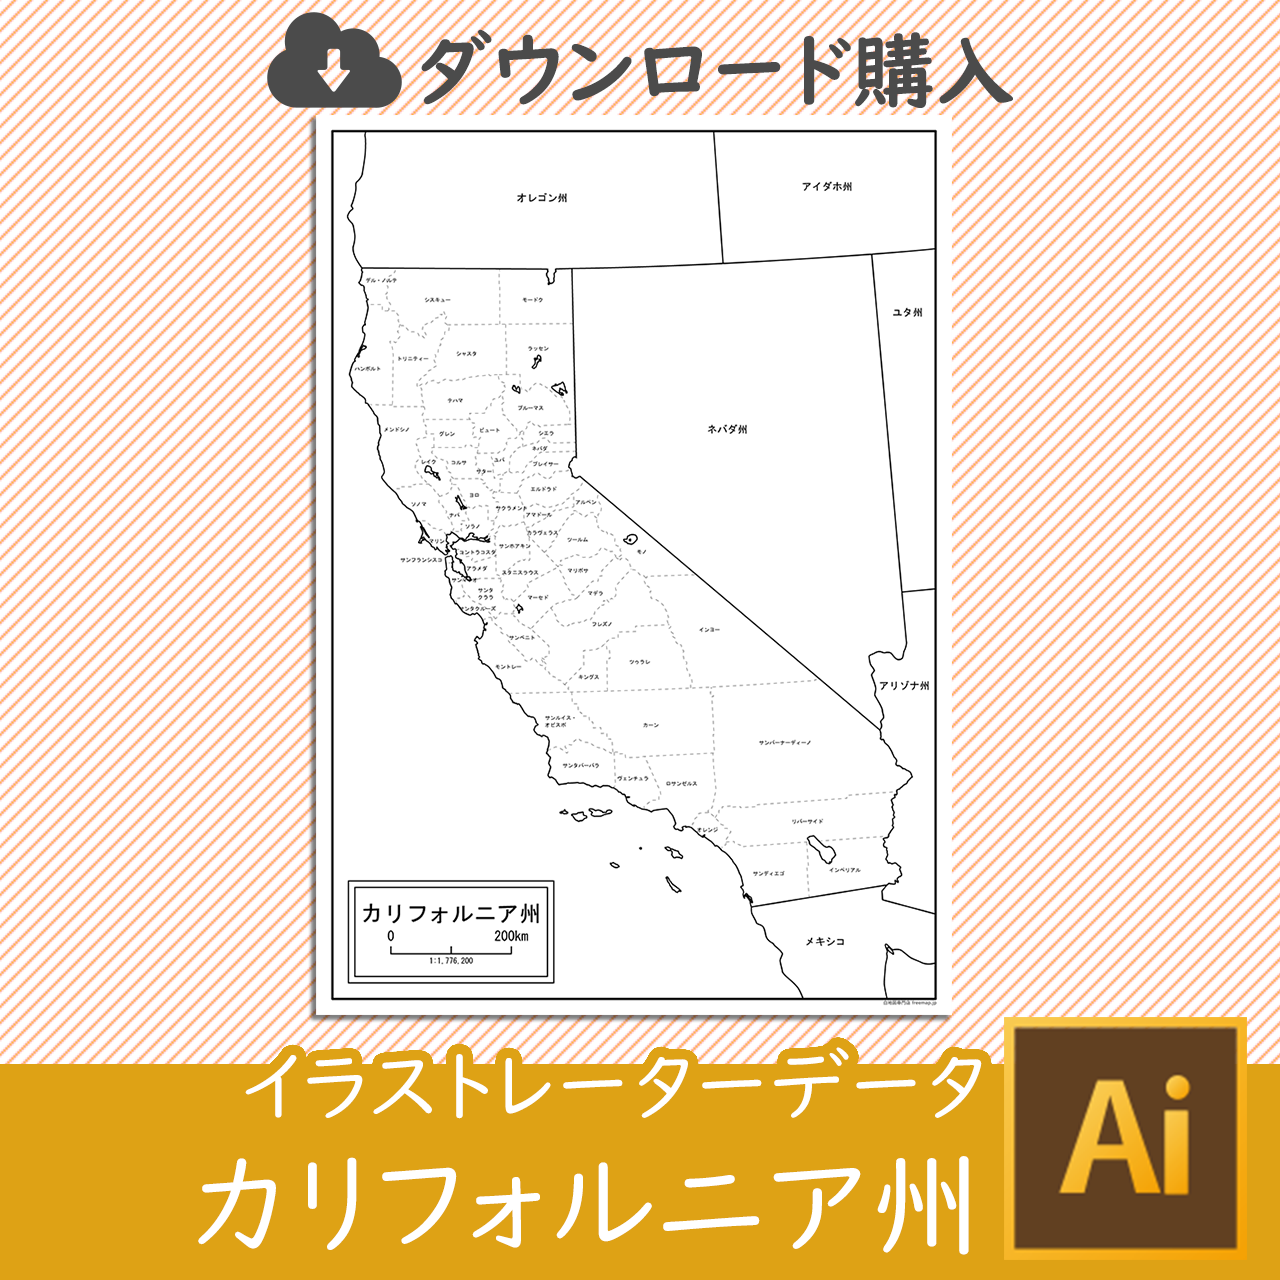 カリフォルニア州の白地図データのサムネイル画像